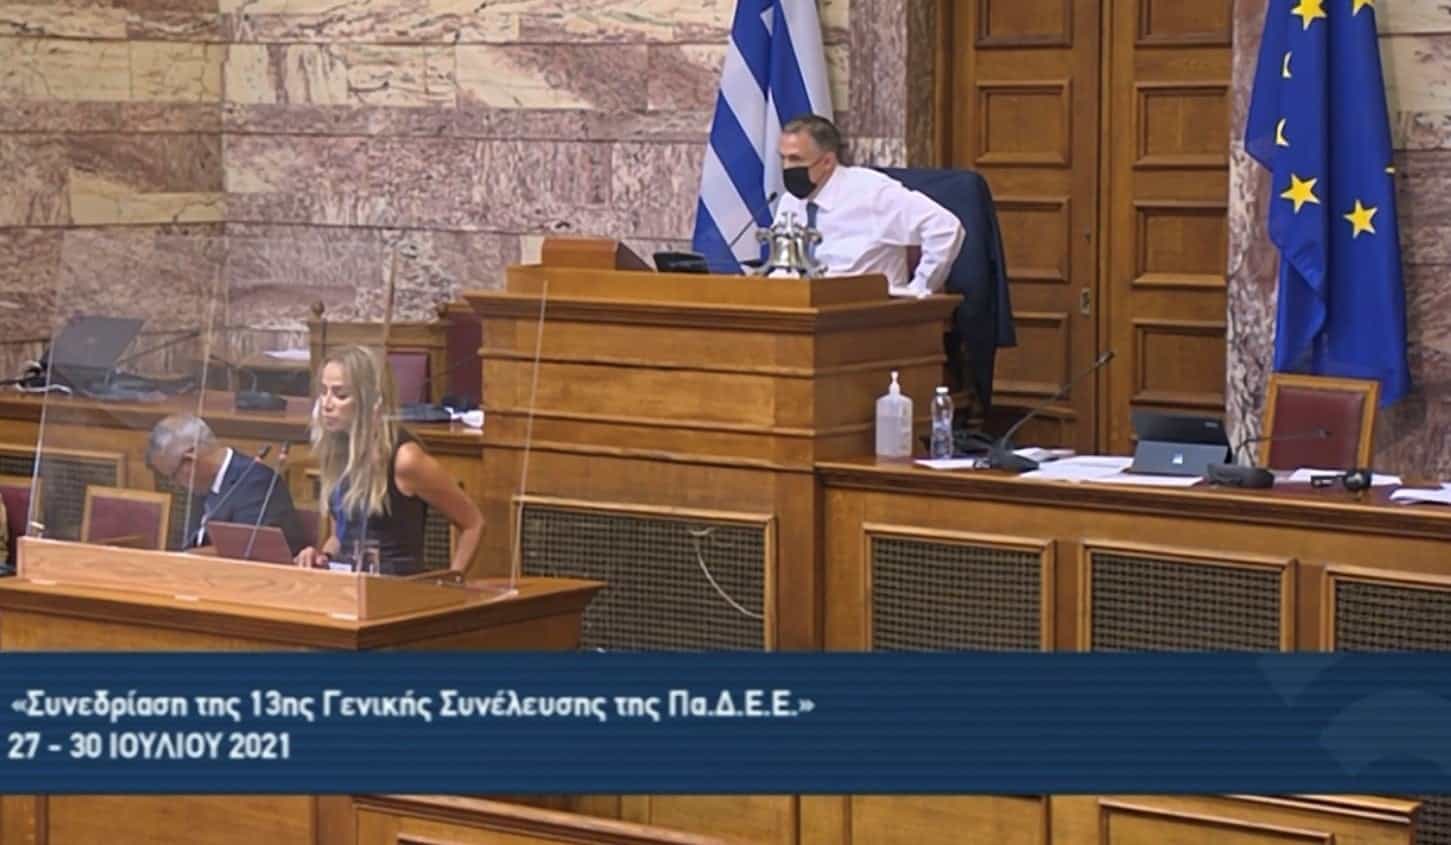 Ο Παγκόσμιος Ελληνικός Ενδοκοινοβουλευτικός Οργανισμός ζητά την ανάκληση γλυπτών του Παρθενώνα